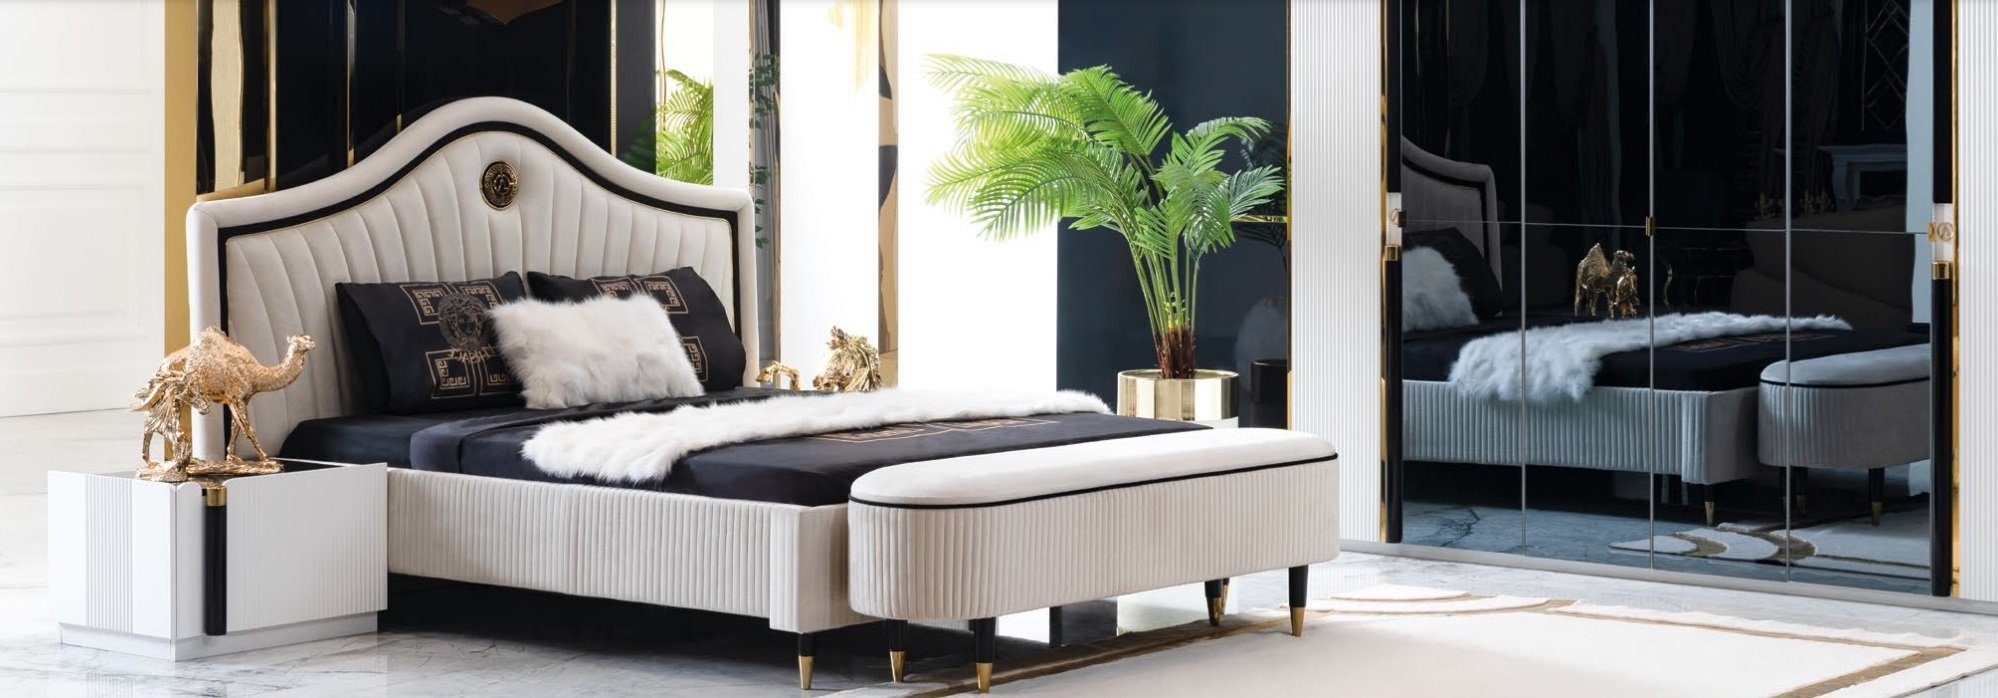 JVmoebel Bett, Schlafzimmer Design Neu Polster Luxus Bett Betten Doppel